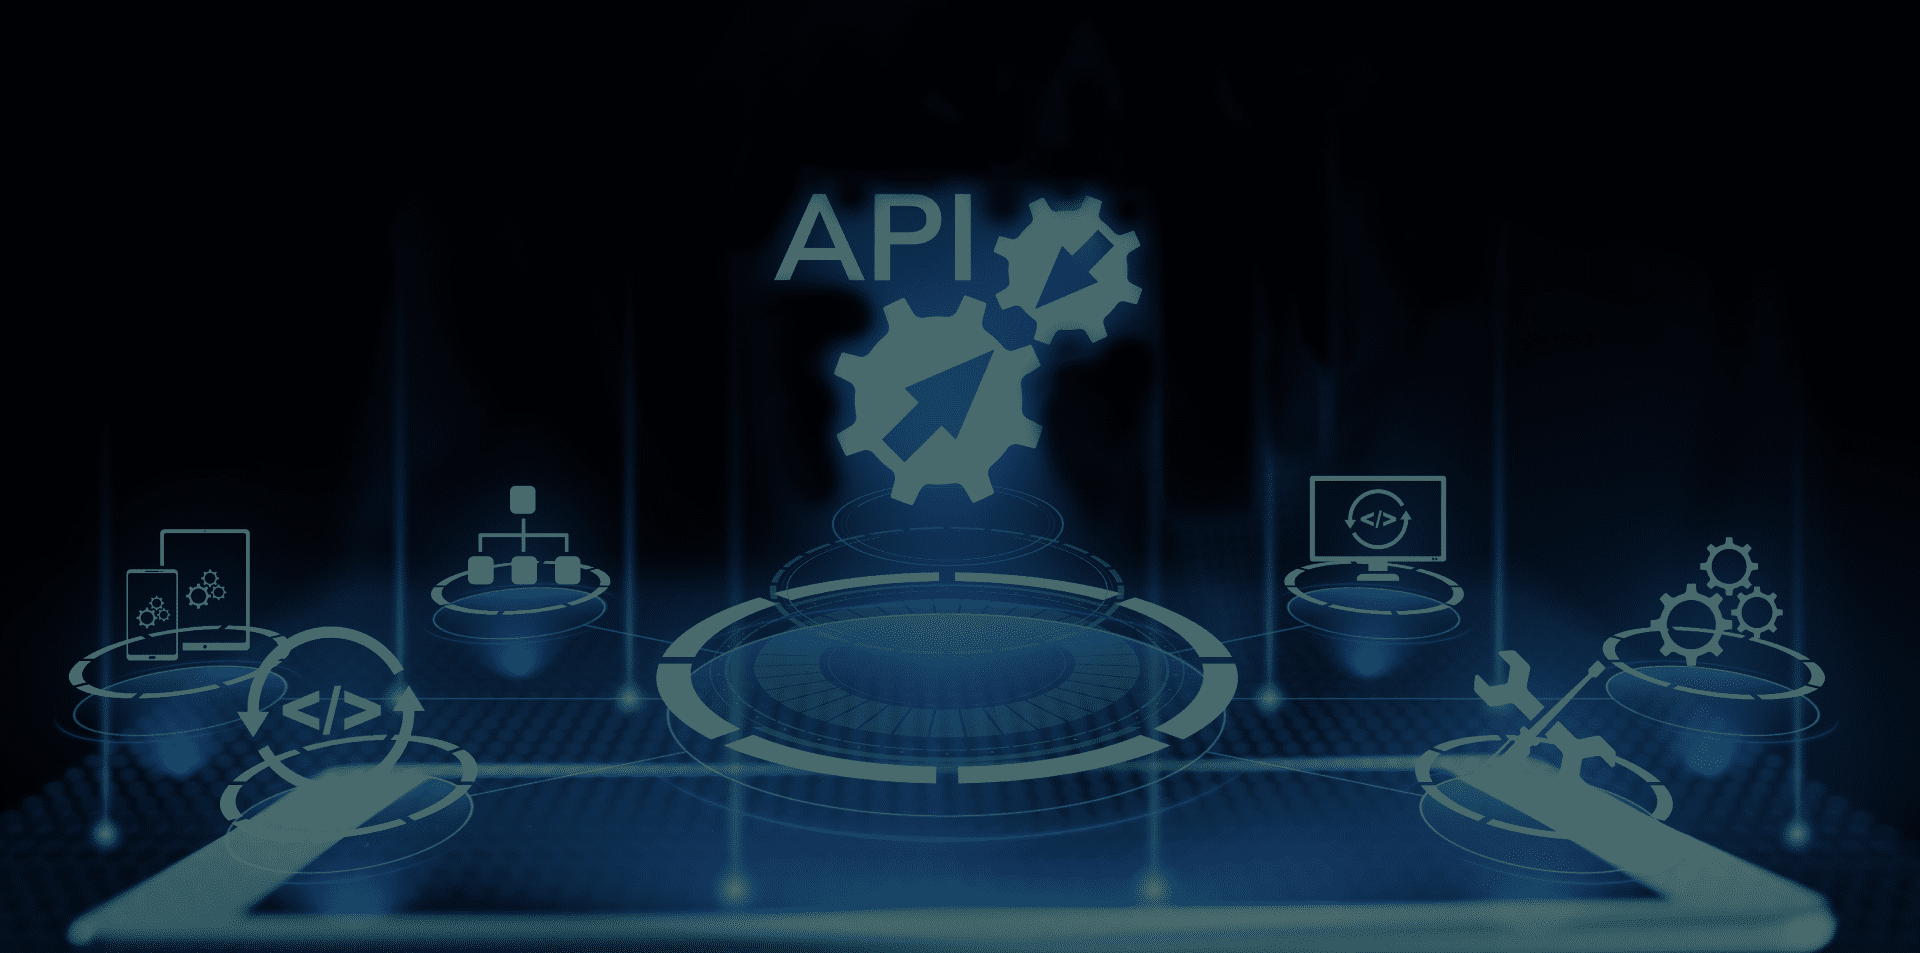 Create Exciting APIs